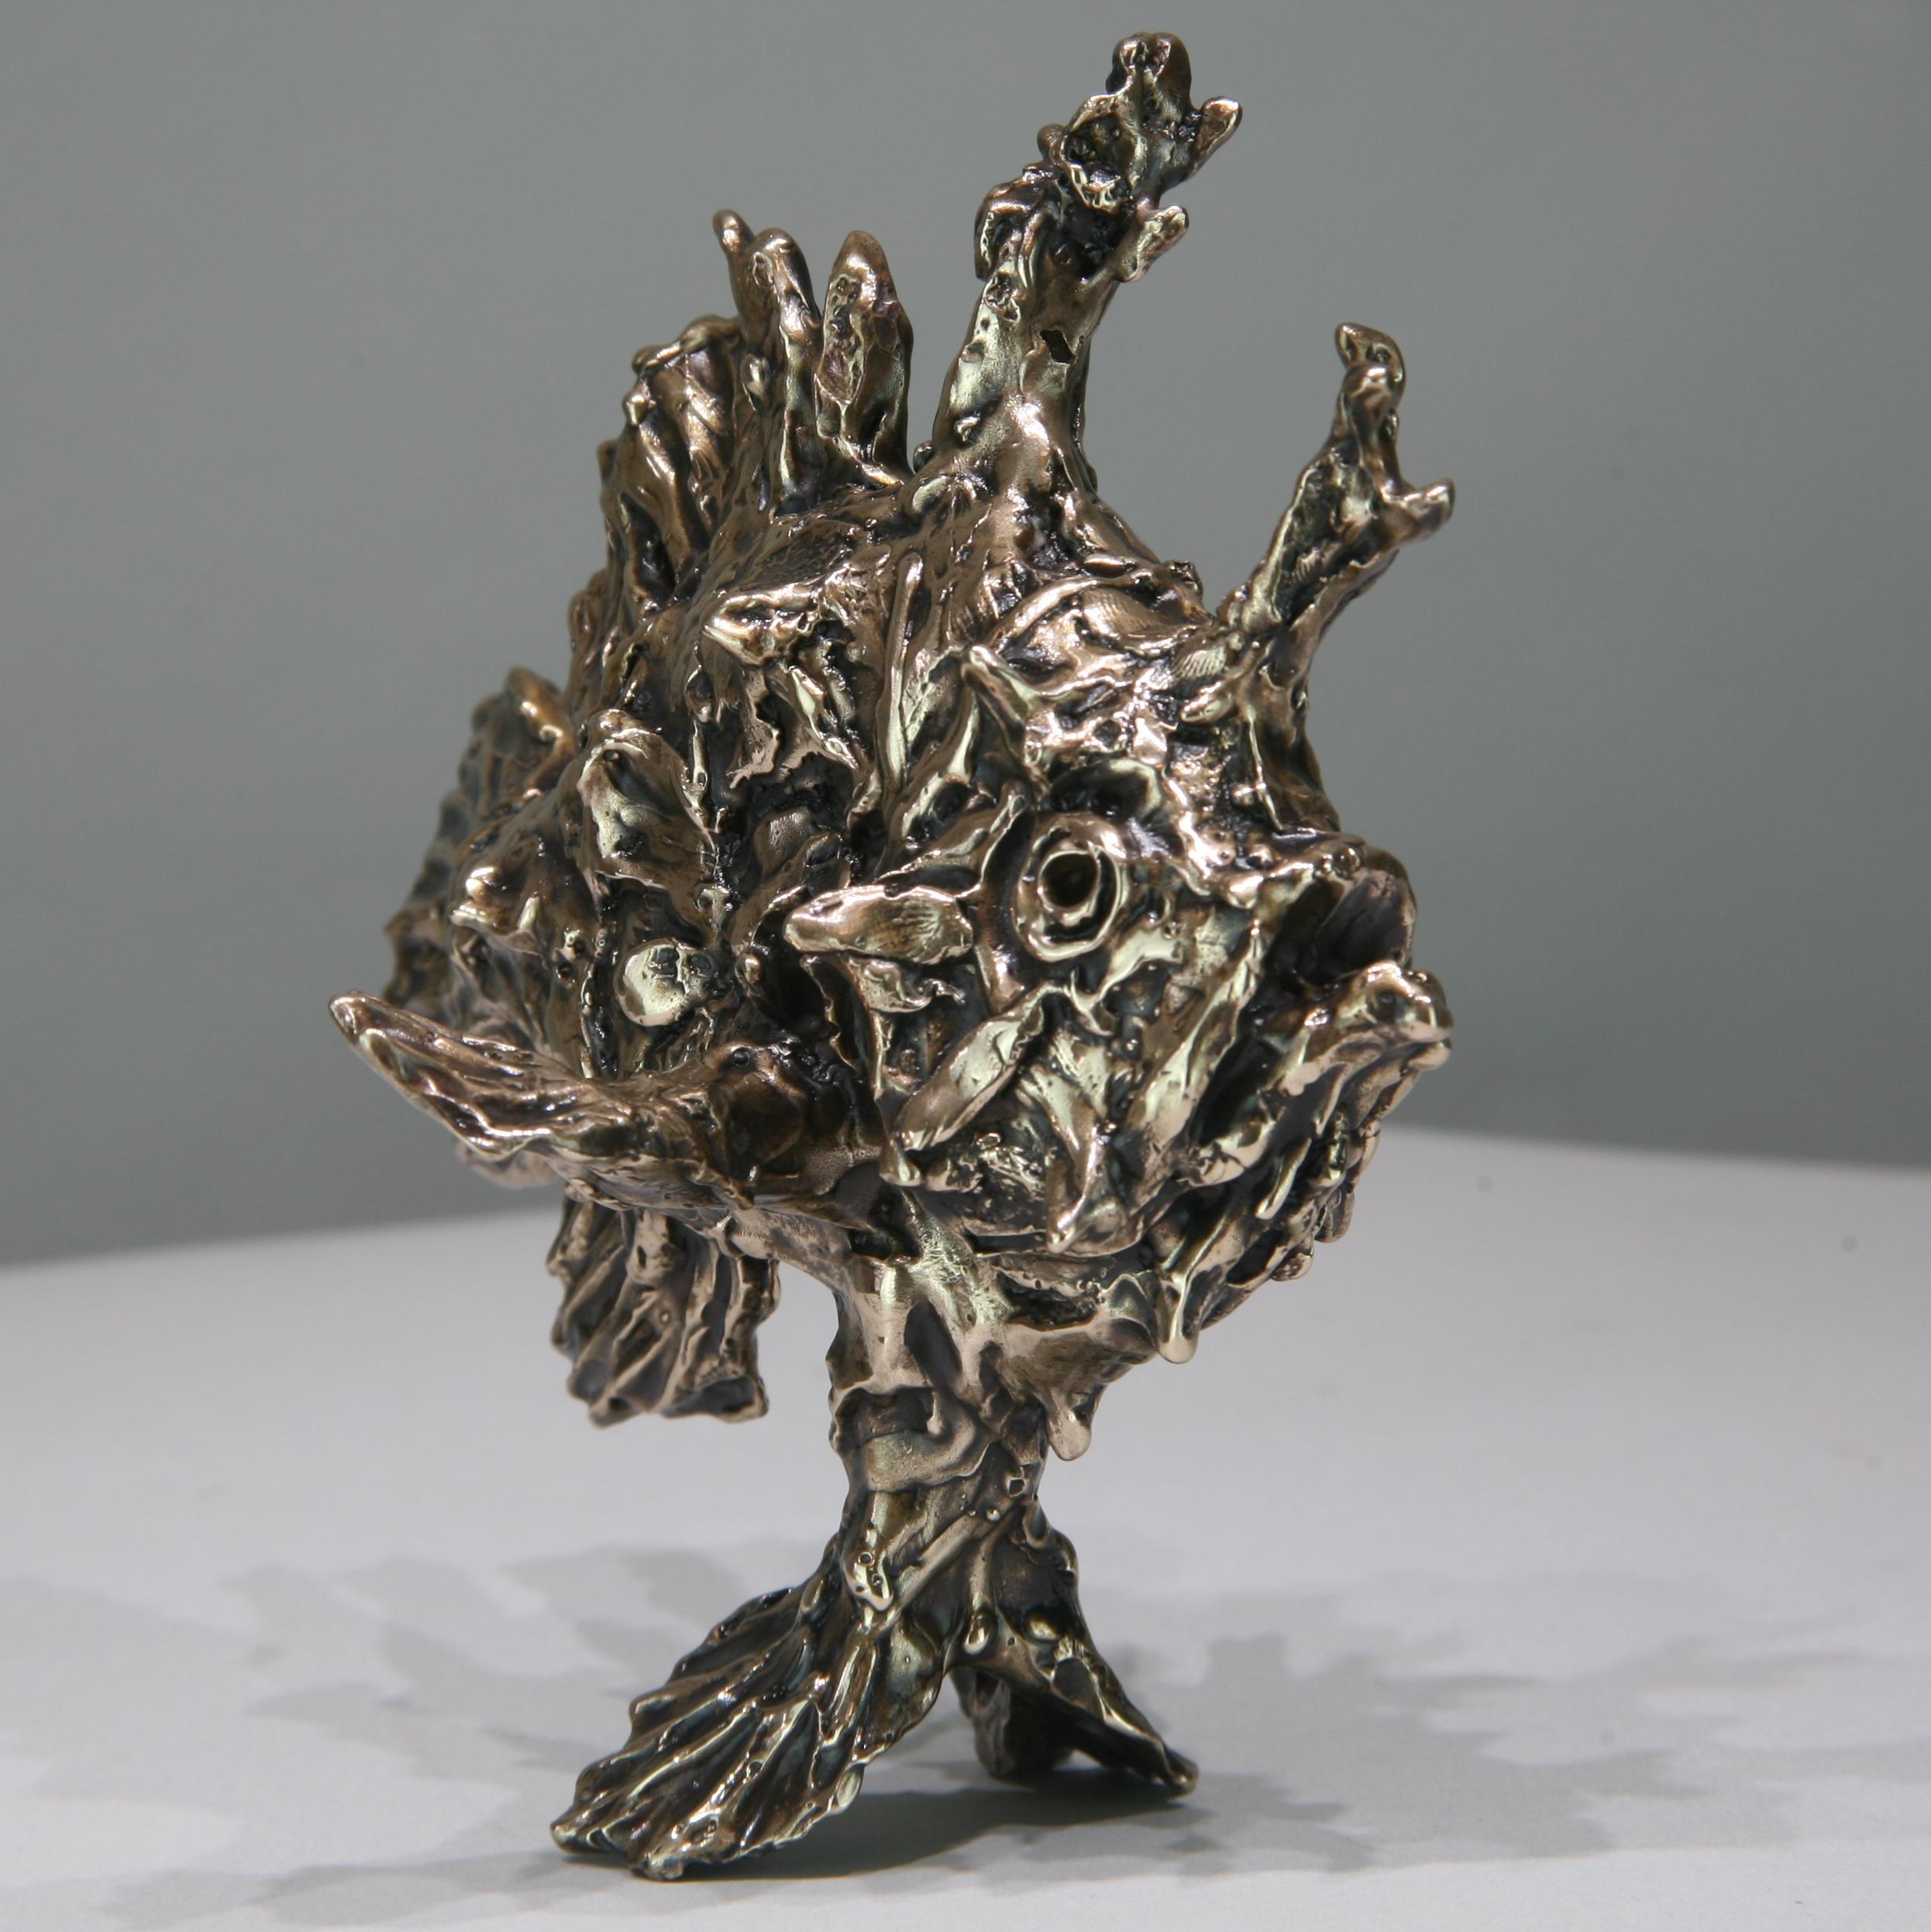 Sargassum-Fisch-Original-Bronze-Wildtier-Skulptur-Kunstwerk-Gegenwartskunst (Gold), Figurative Sculpture, von Andrzej Szymczyk